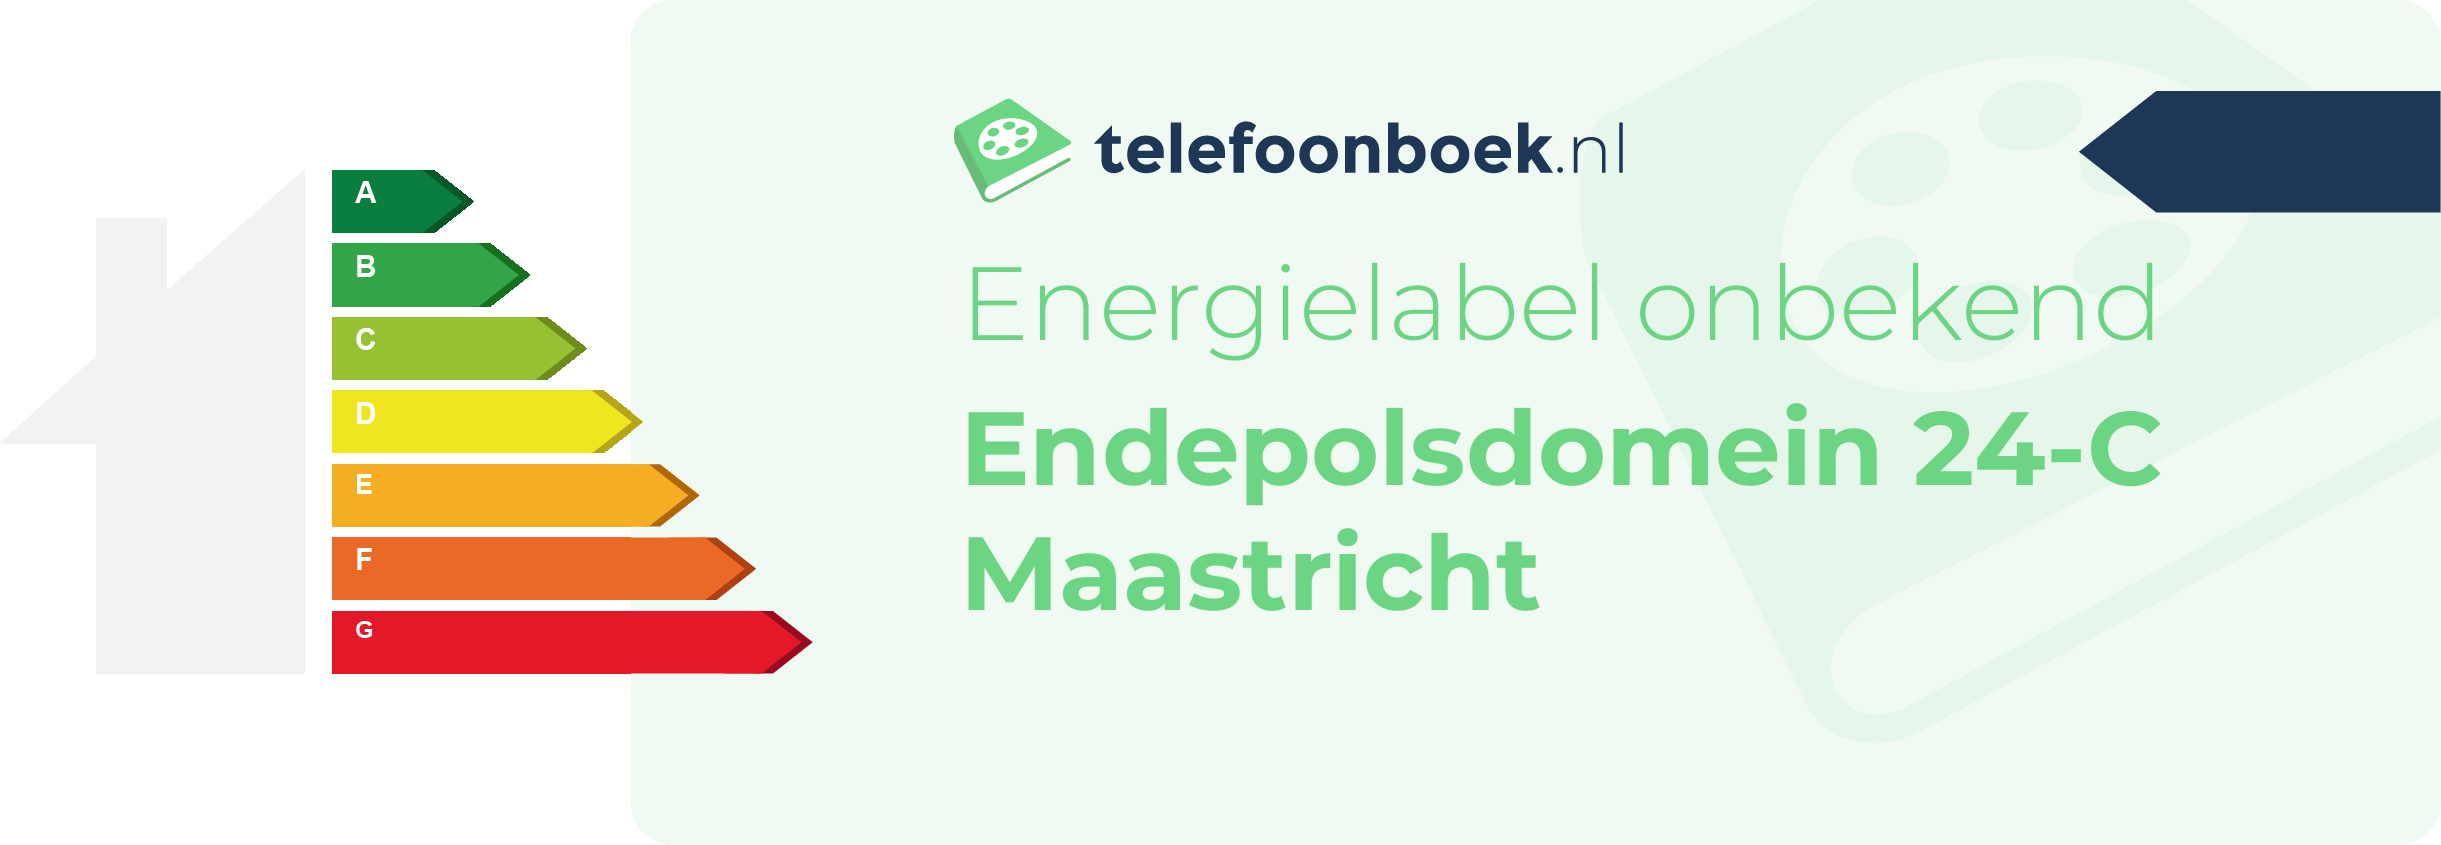 Energielabel Endepolsdomein 24-C Maastricht